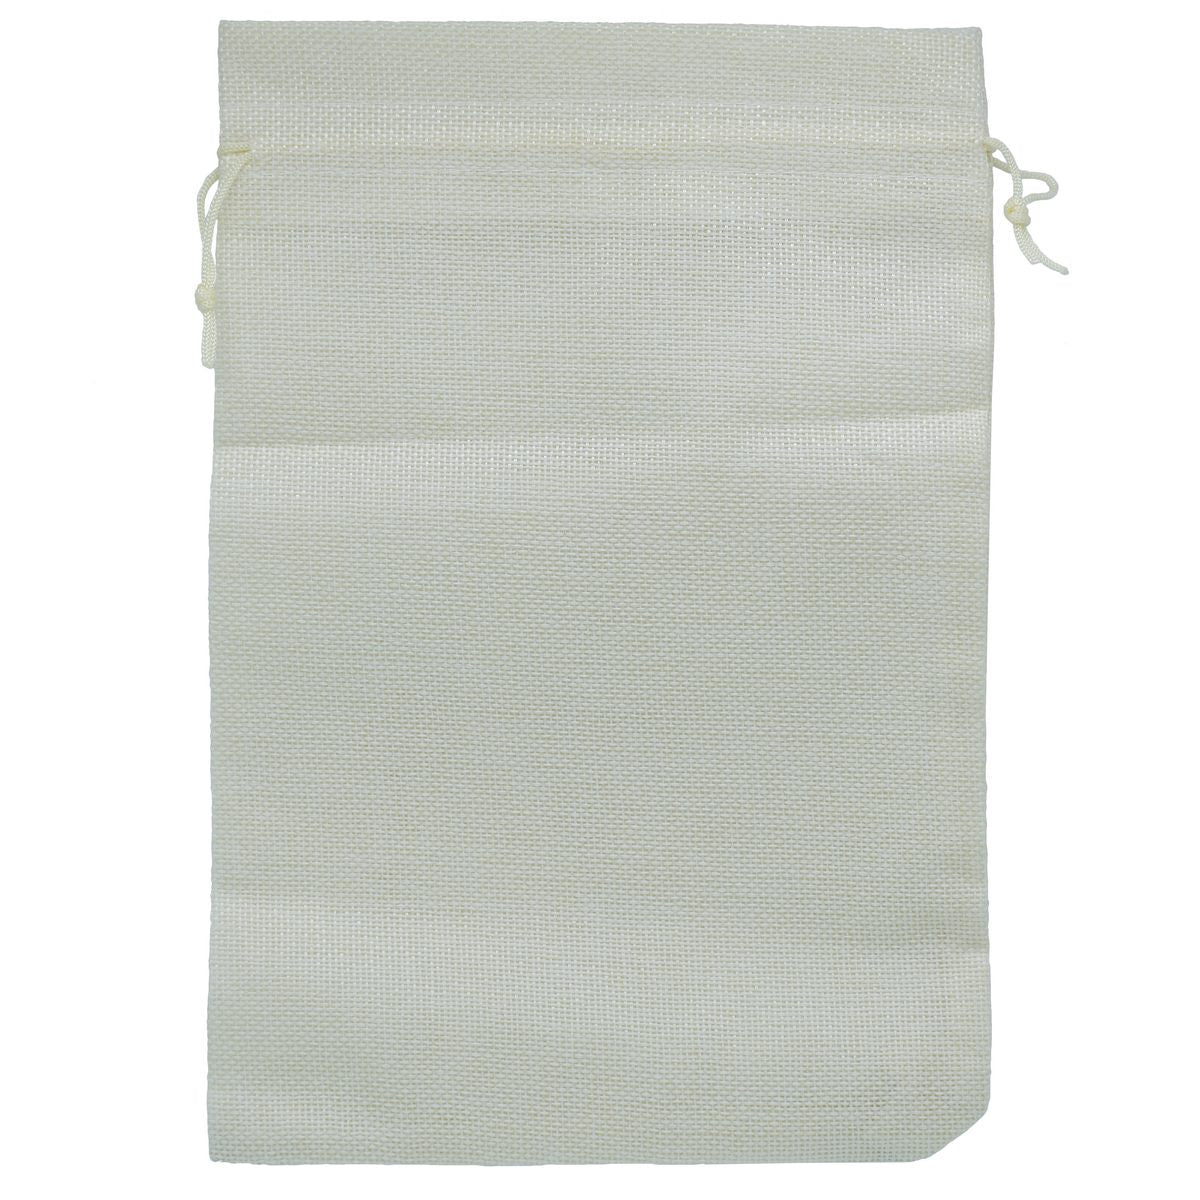 jags-mumbai Pouch Gift pouch cloth cream colour XXl Big 5 No